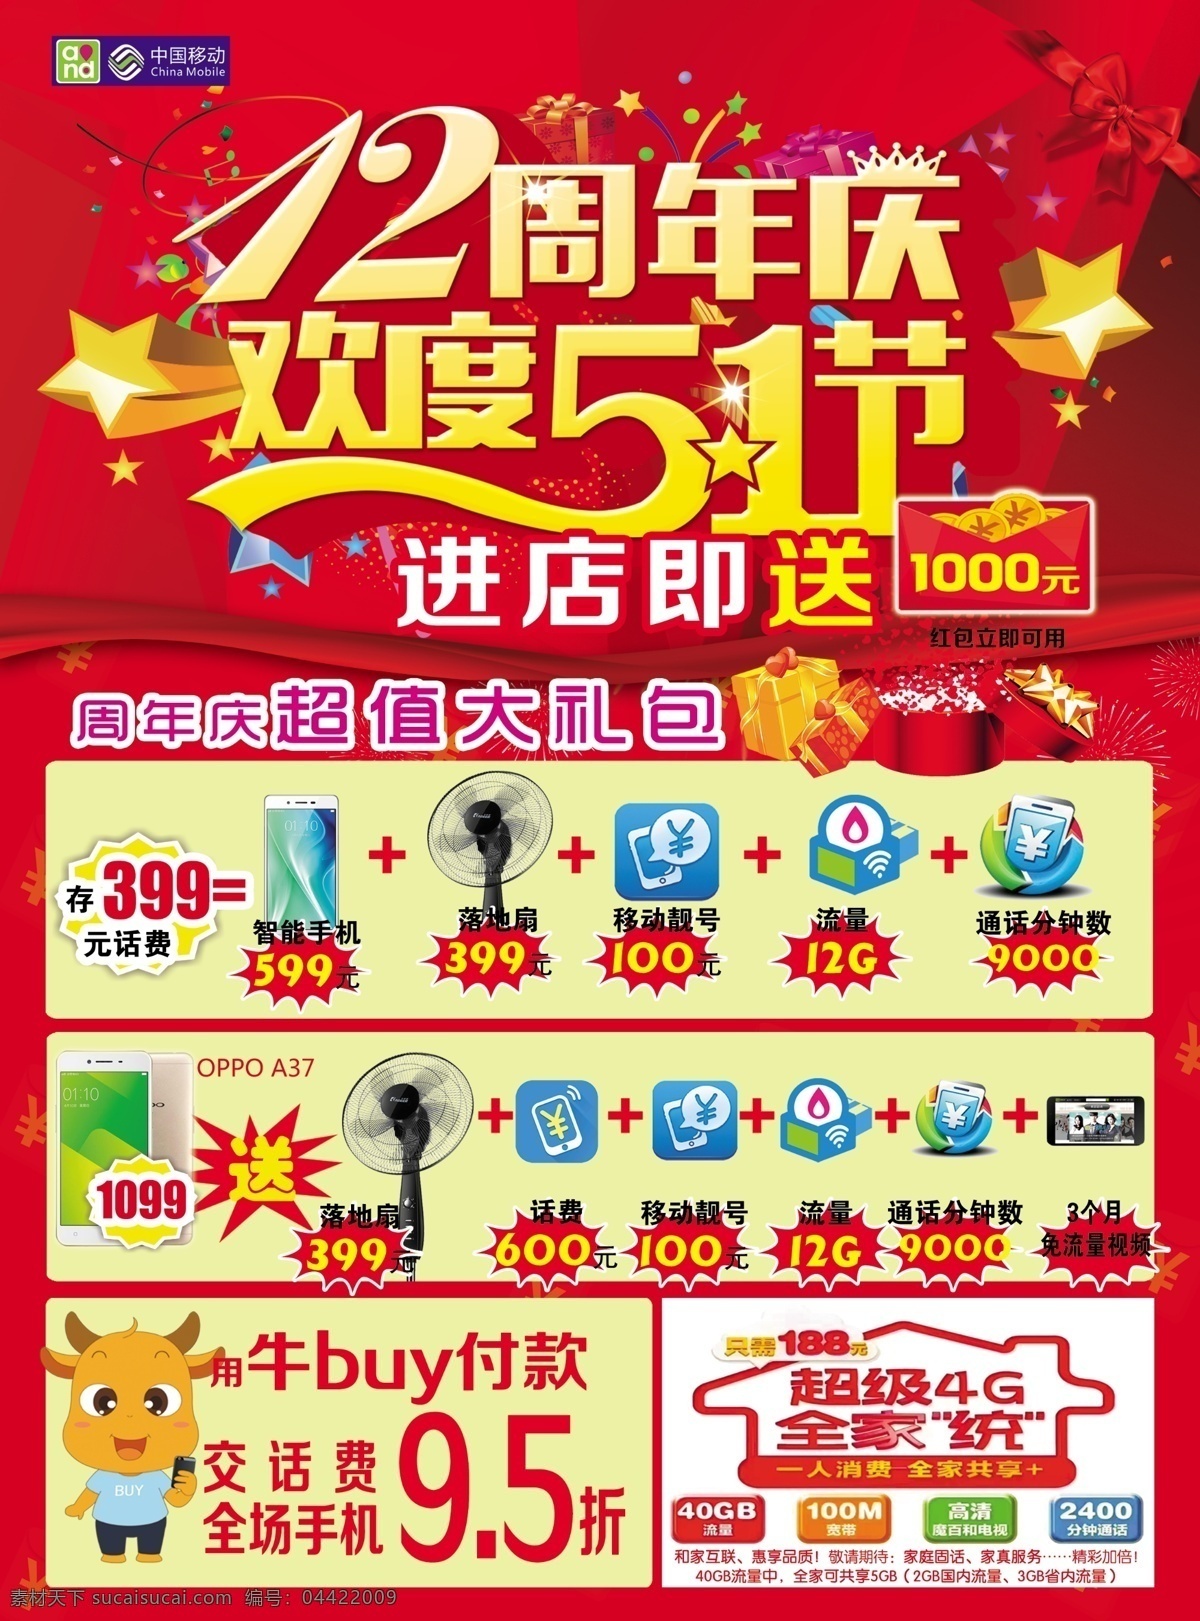 手机 店 庆 五 一同 齐 中国移动 手机店 12周年庆 欢度51 买手机送好礼 dm宣传单